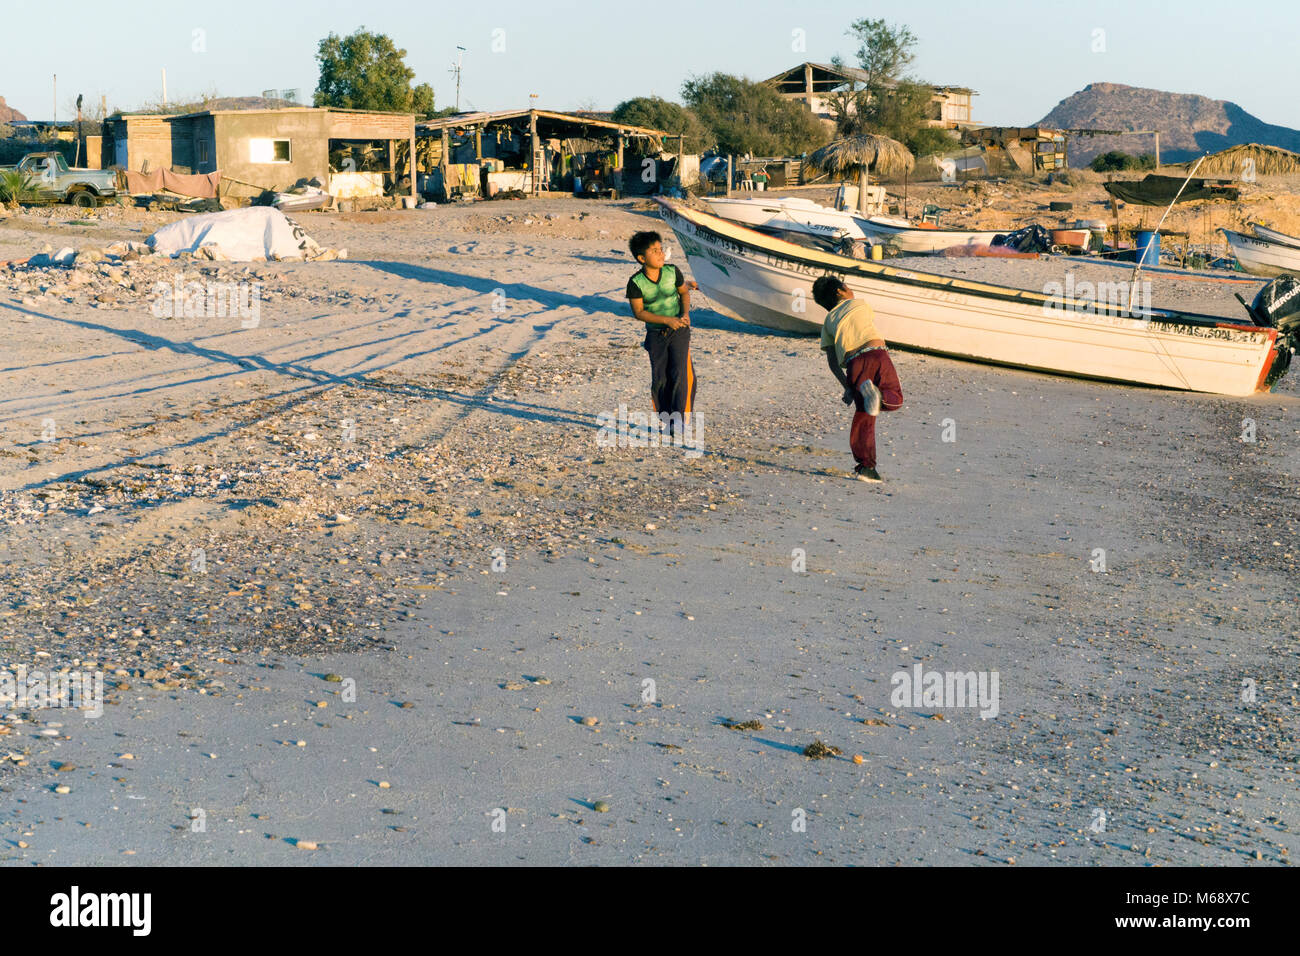 Dos pequeños niños juegan mexicanos arrojando piedras al mar desde la playa donde barcos de pesca están hacia arriba y la costa está bordeada de casas improvisadas de pescadores Foto de stock